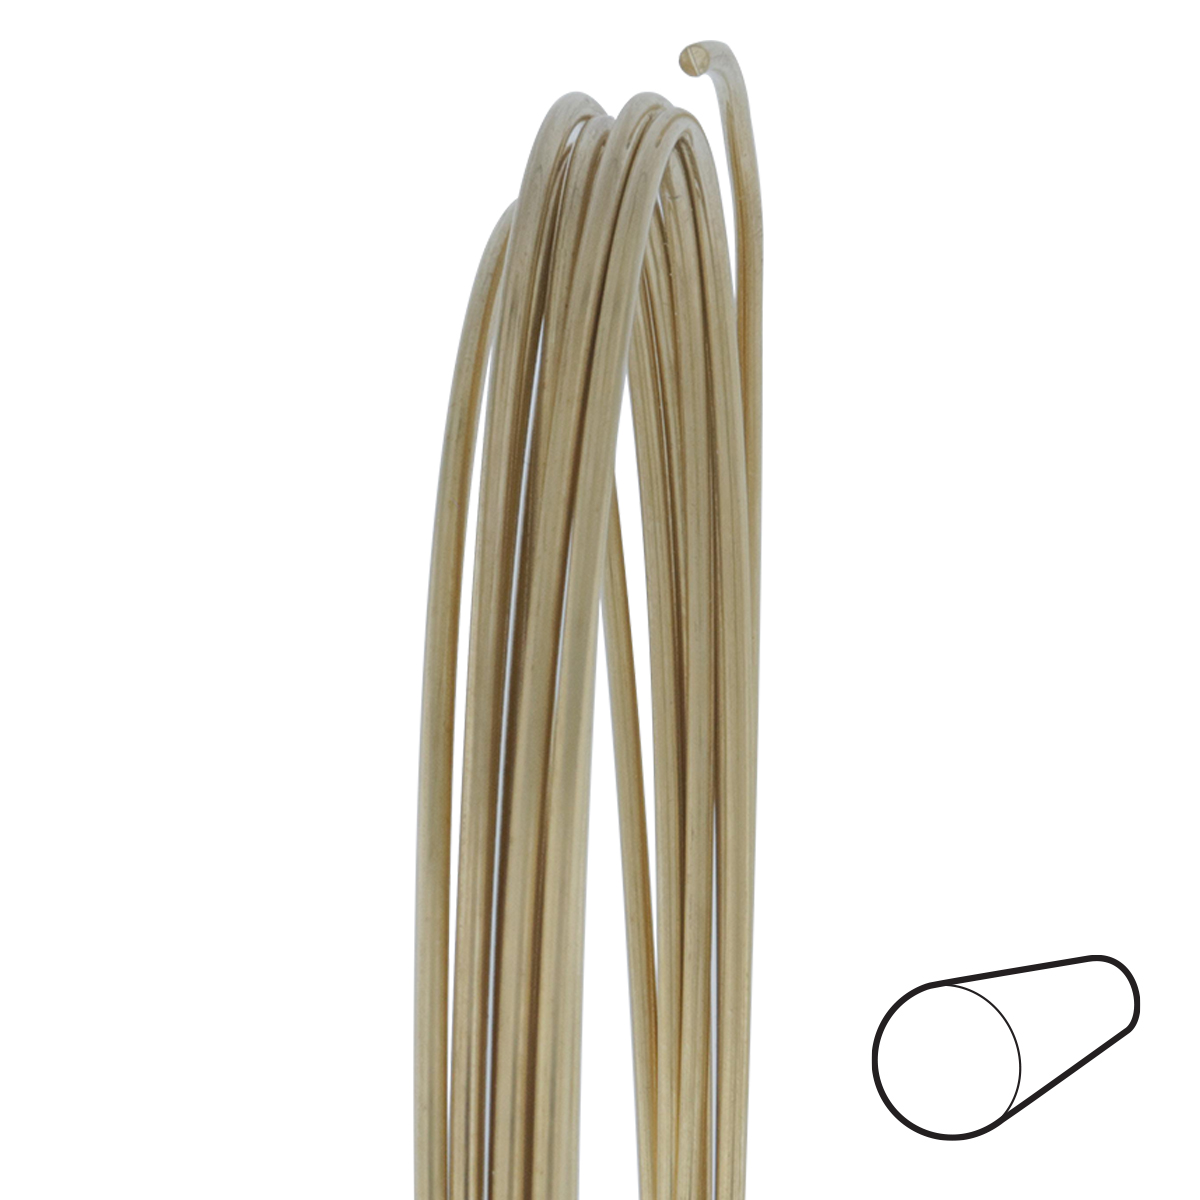 24 Gauge Round Half Hard Red Brass Wire: Wire Jewelry